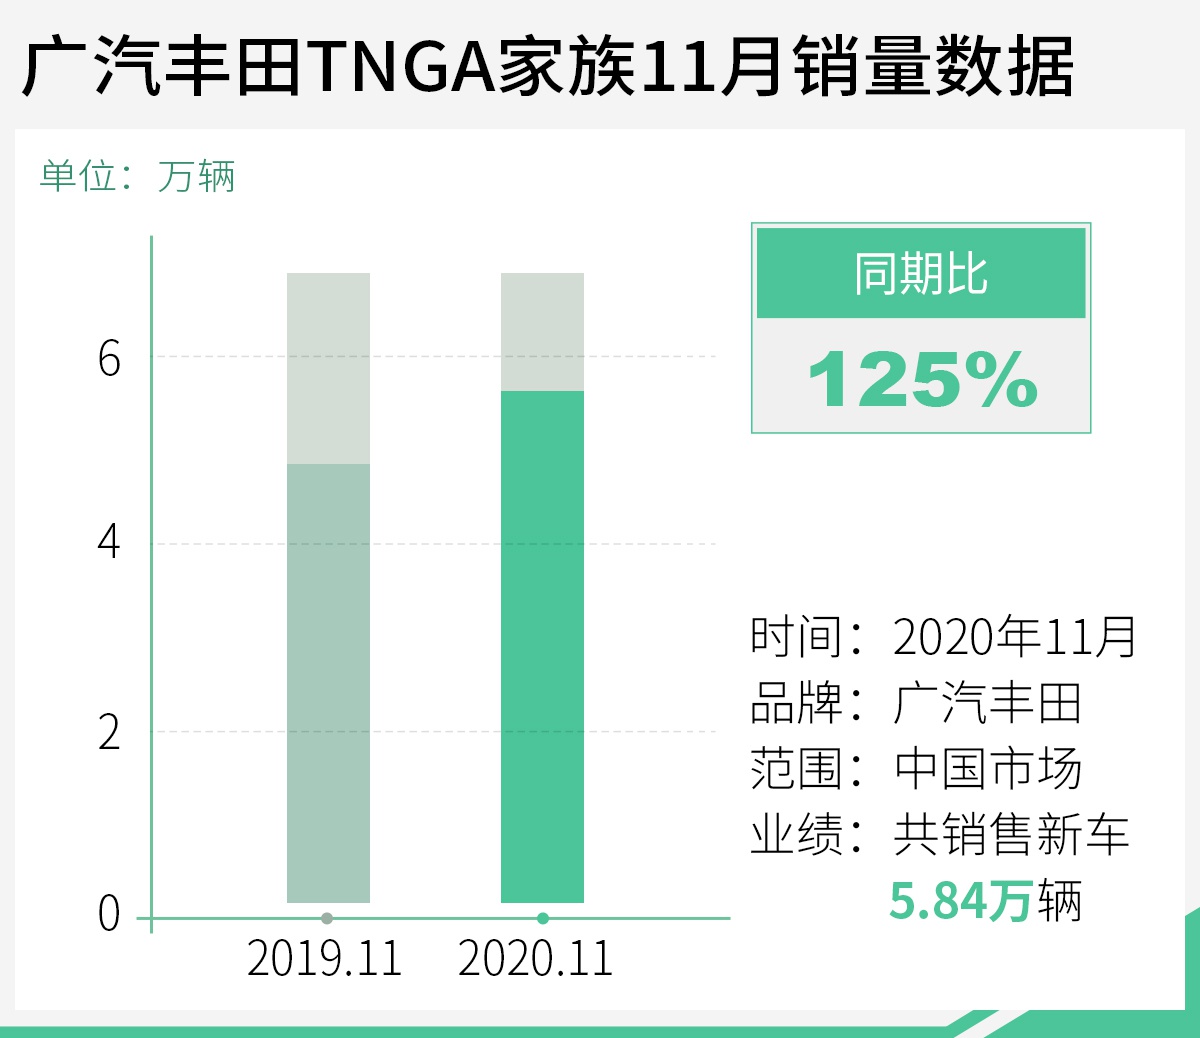 同比增长14% 广汽丰田11月销量达7.74万辆